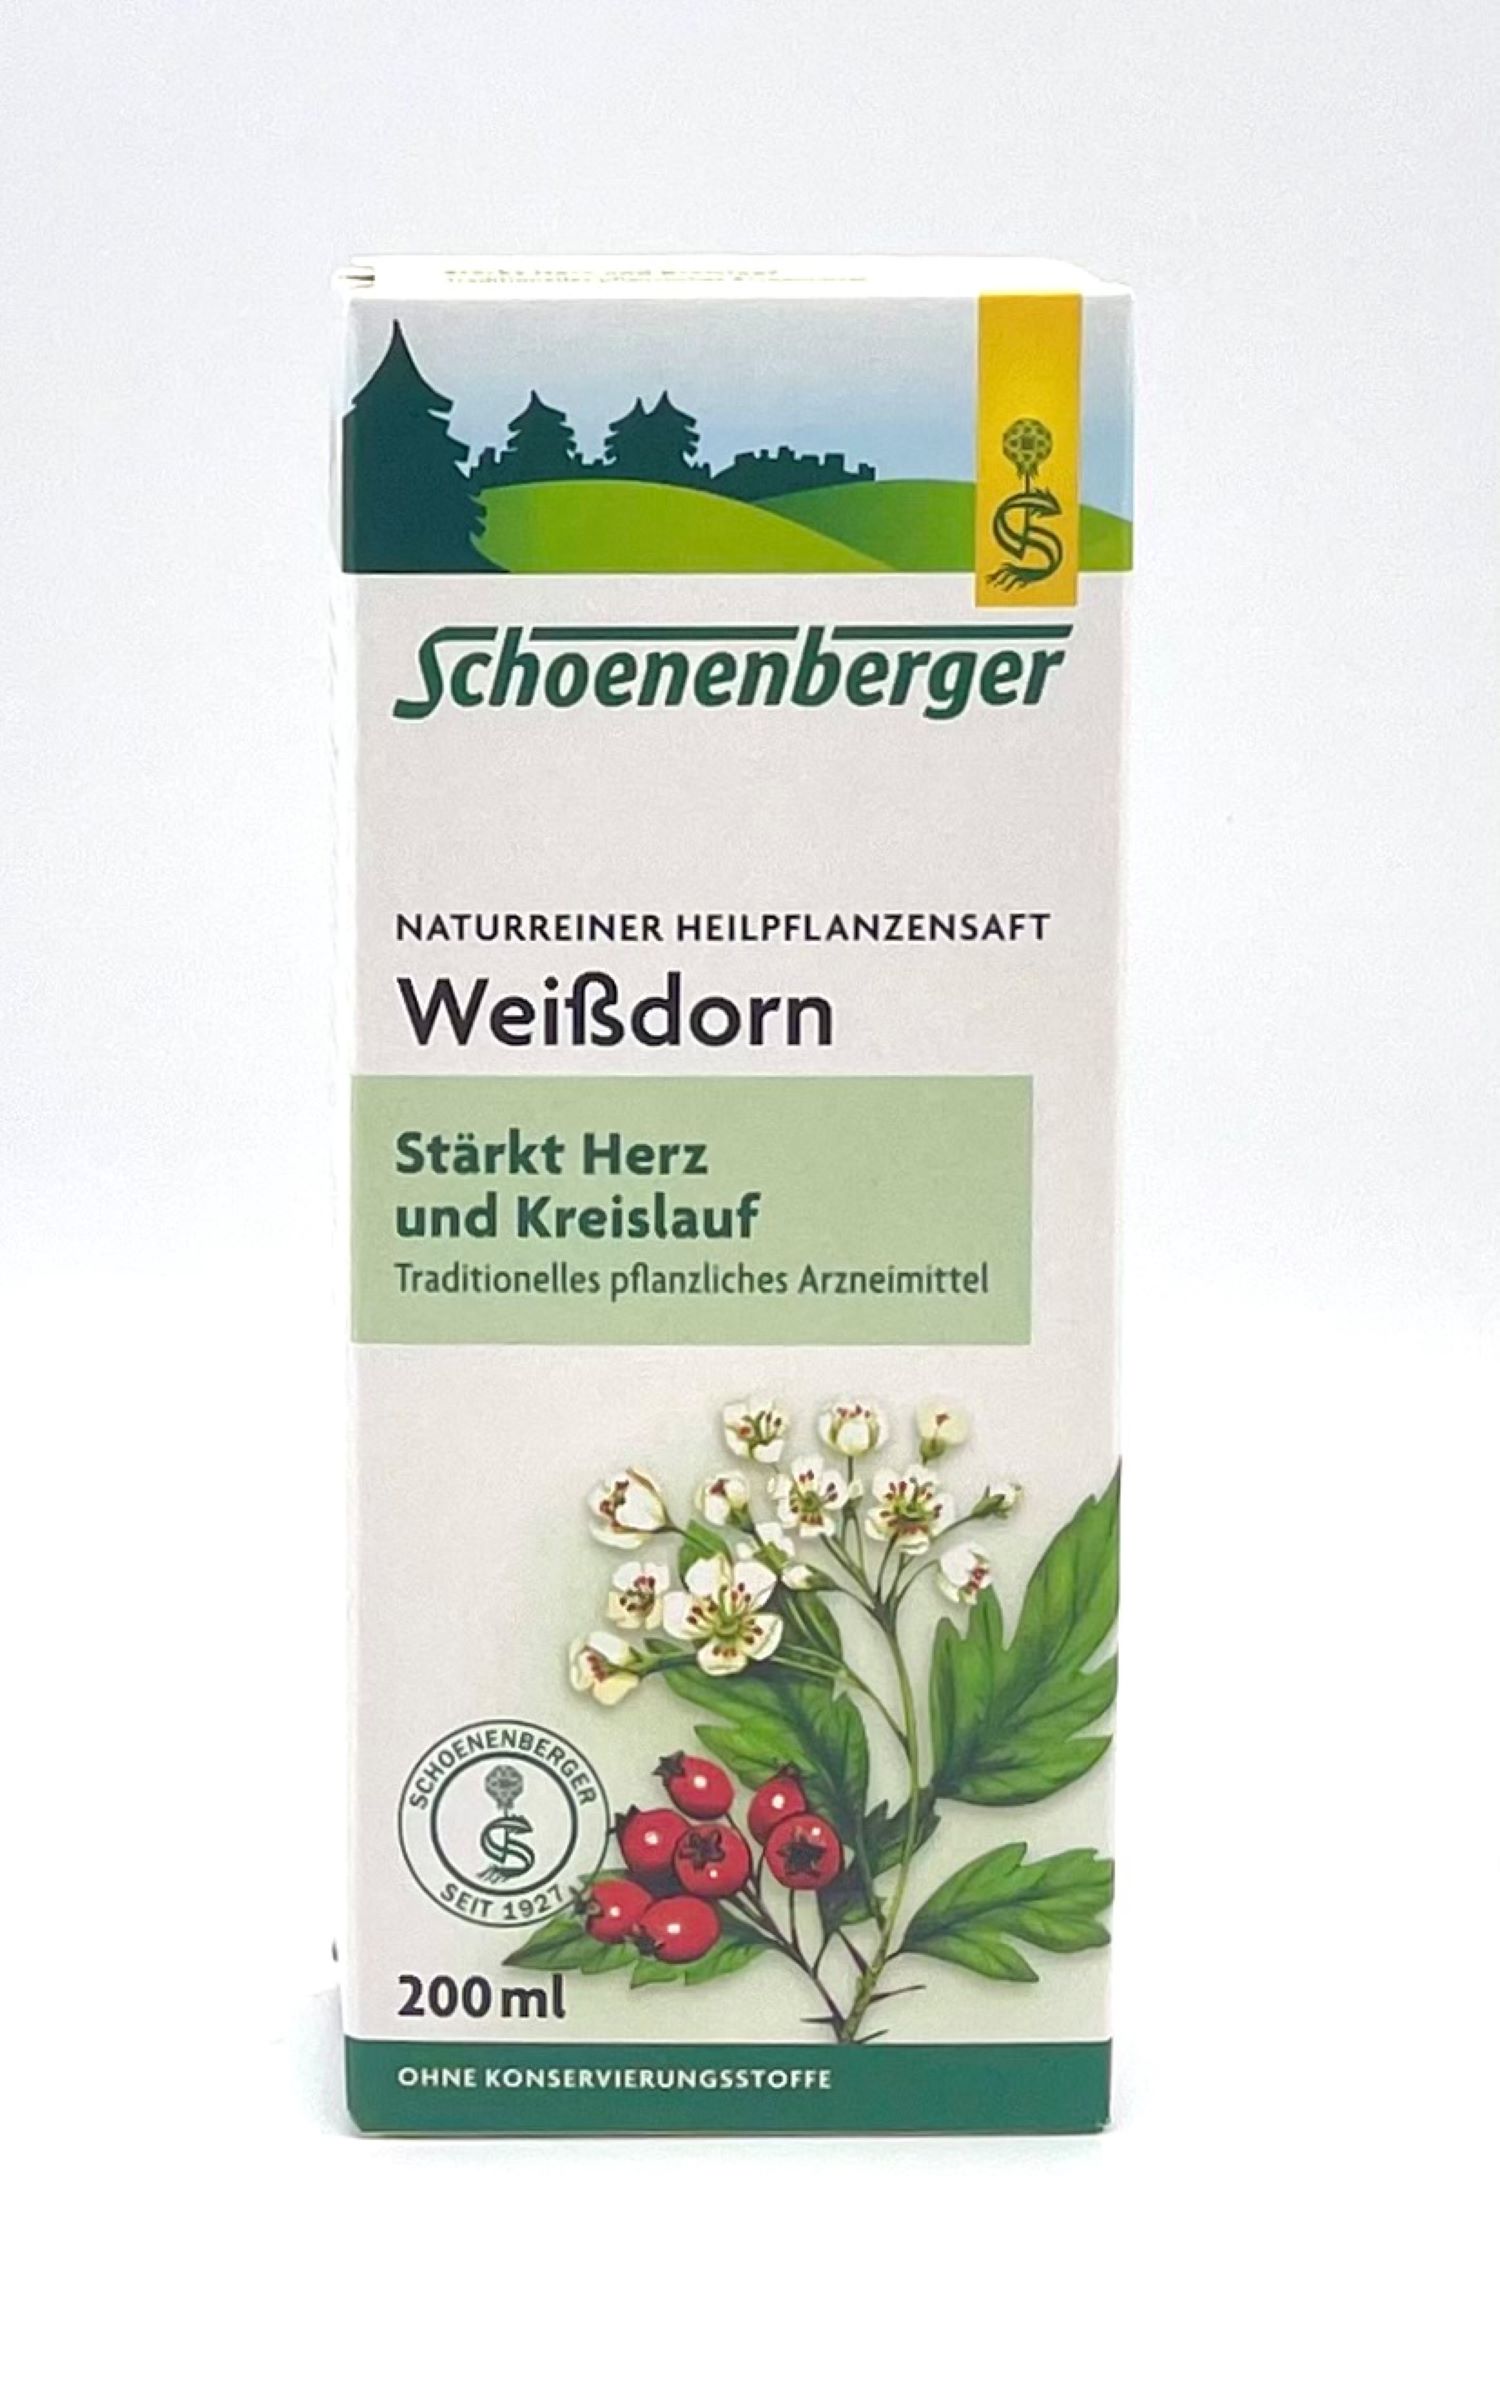 Schoenenberger Weißdorn Naturreiner Heilpflanzensaft 200ml  